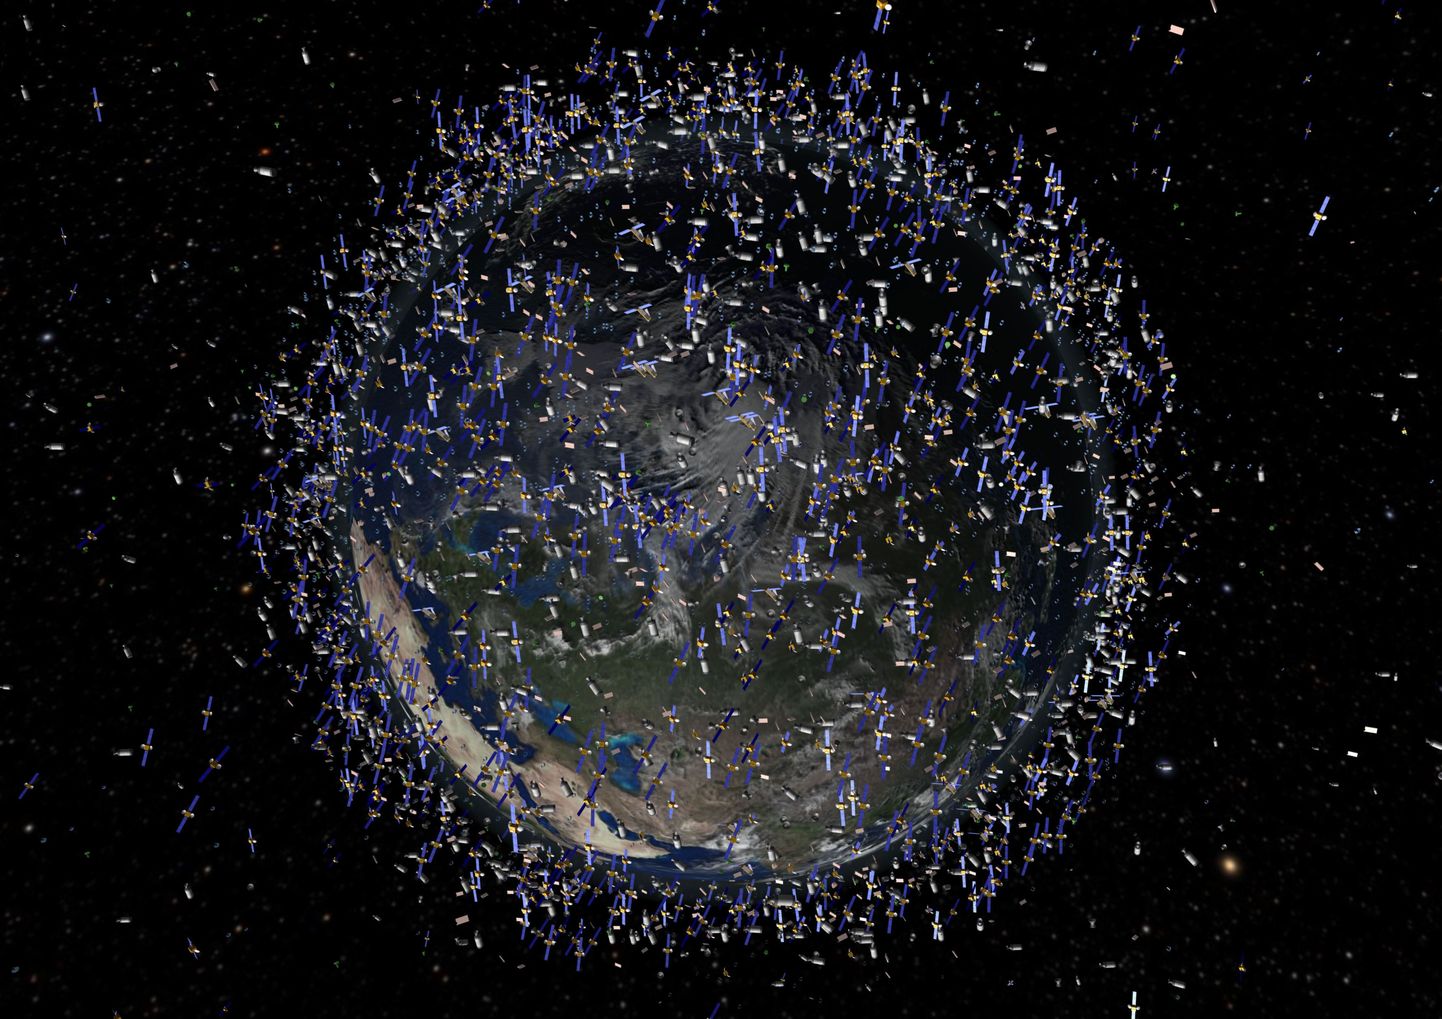 Euroopa kosmoseagentuuri uuring näitas, et Maa lähedasel orbiidil on suur hulk prügi